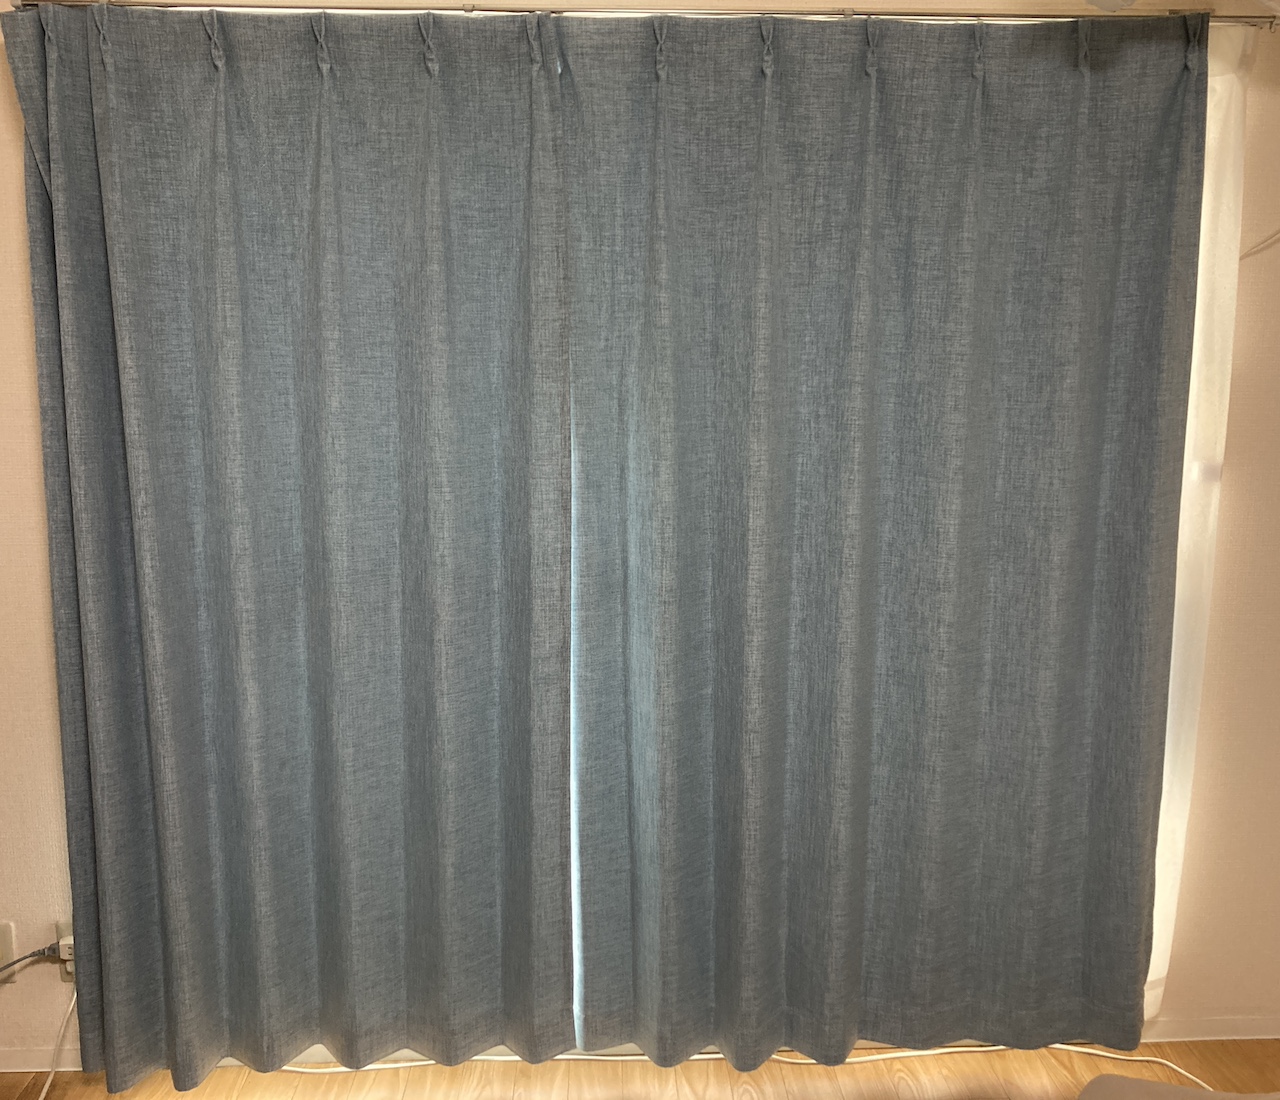 SwitchBotカーテンを設置したカーテンの大きさ